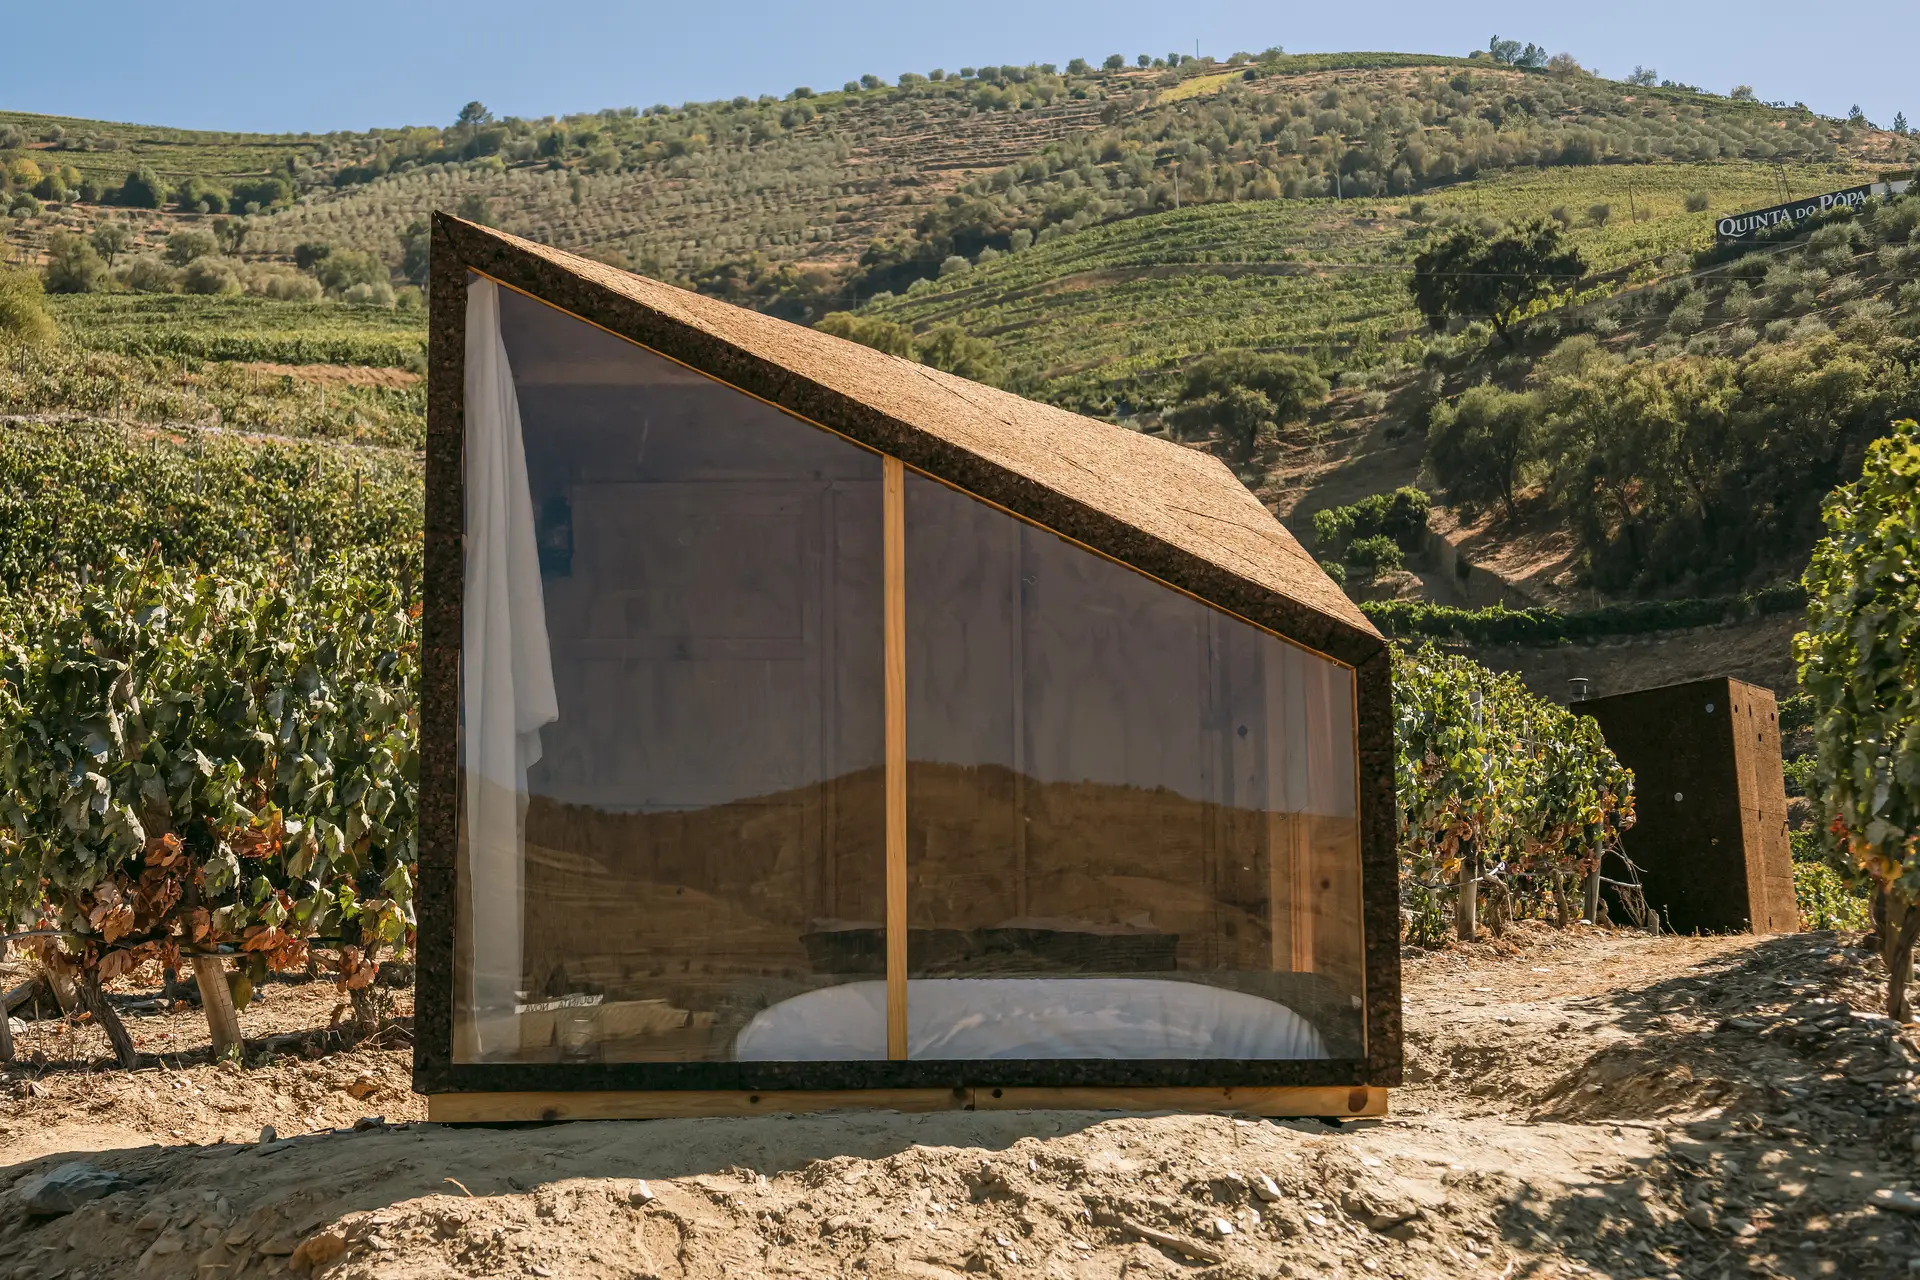 Vindimar e dormir num Ecocubo sustentável entre as vinhas do Douro